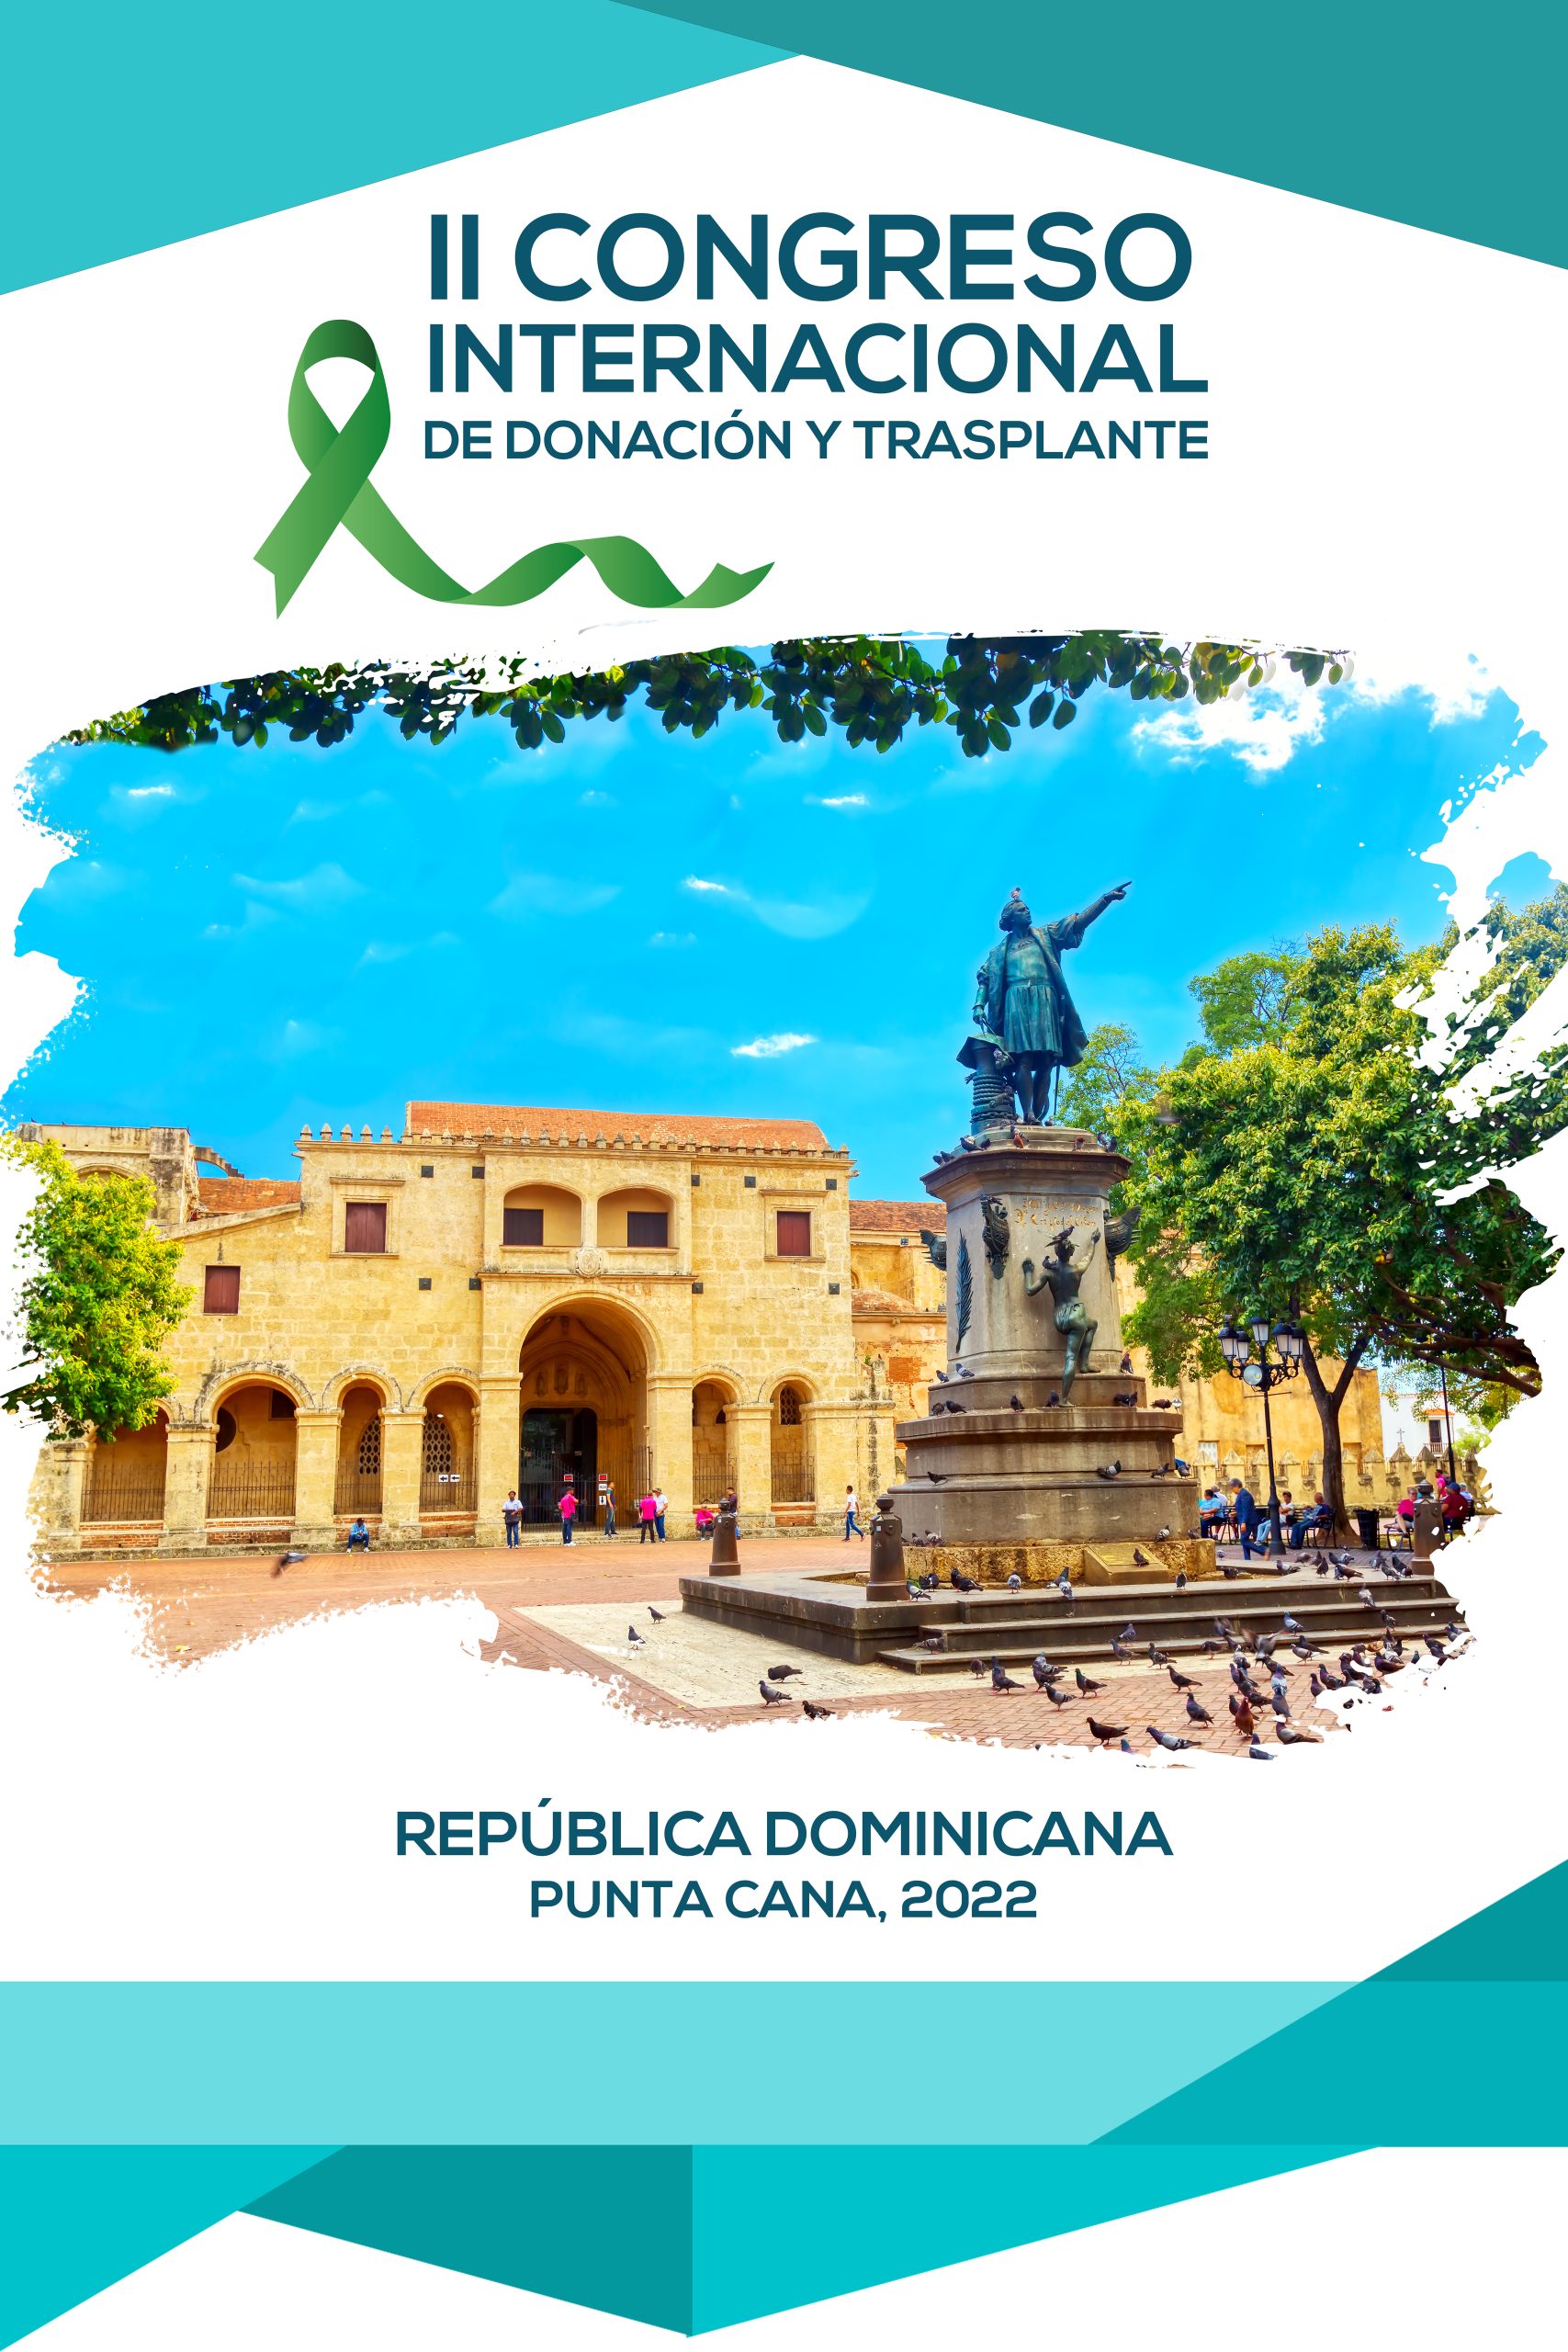 ll Congreso Internacional de Donación y Trasplante en República Dominicana